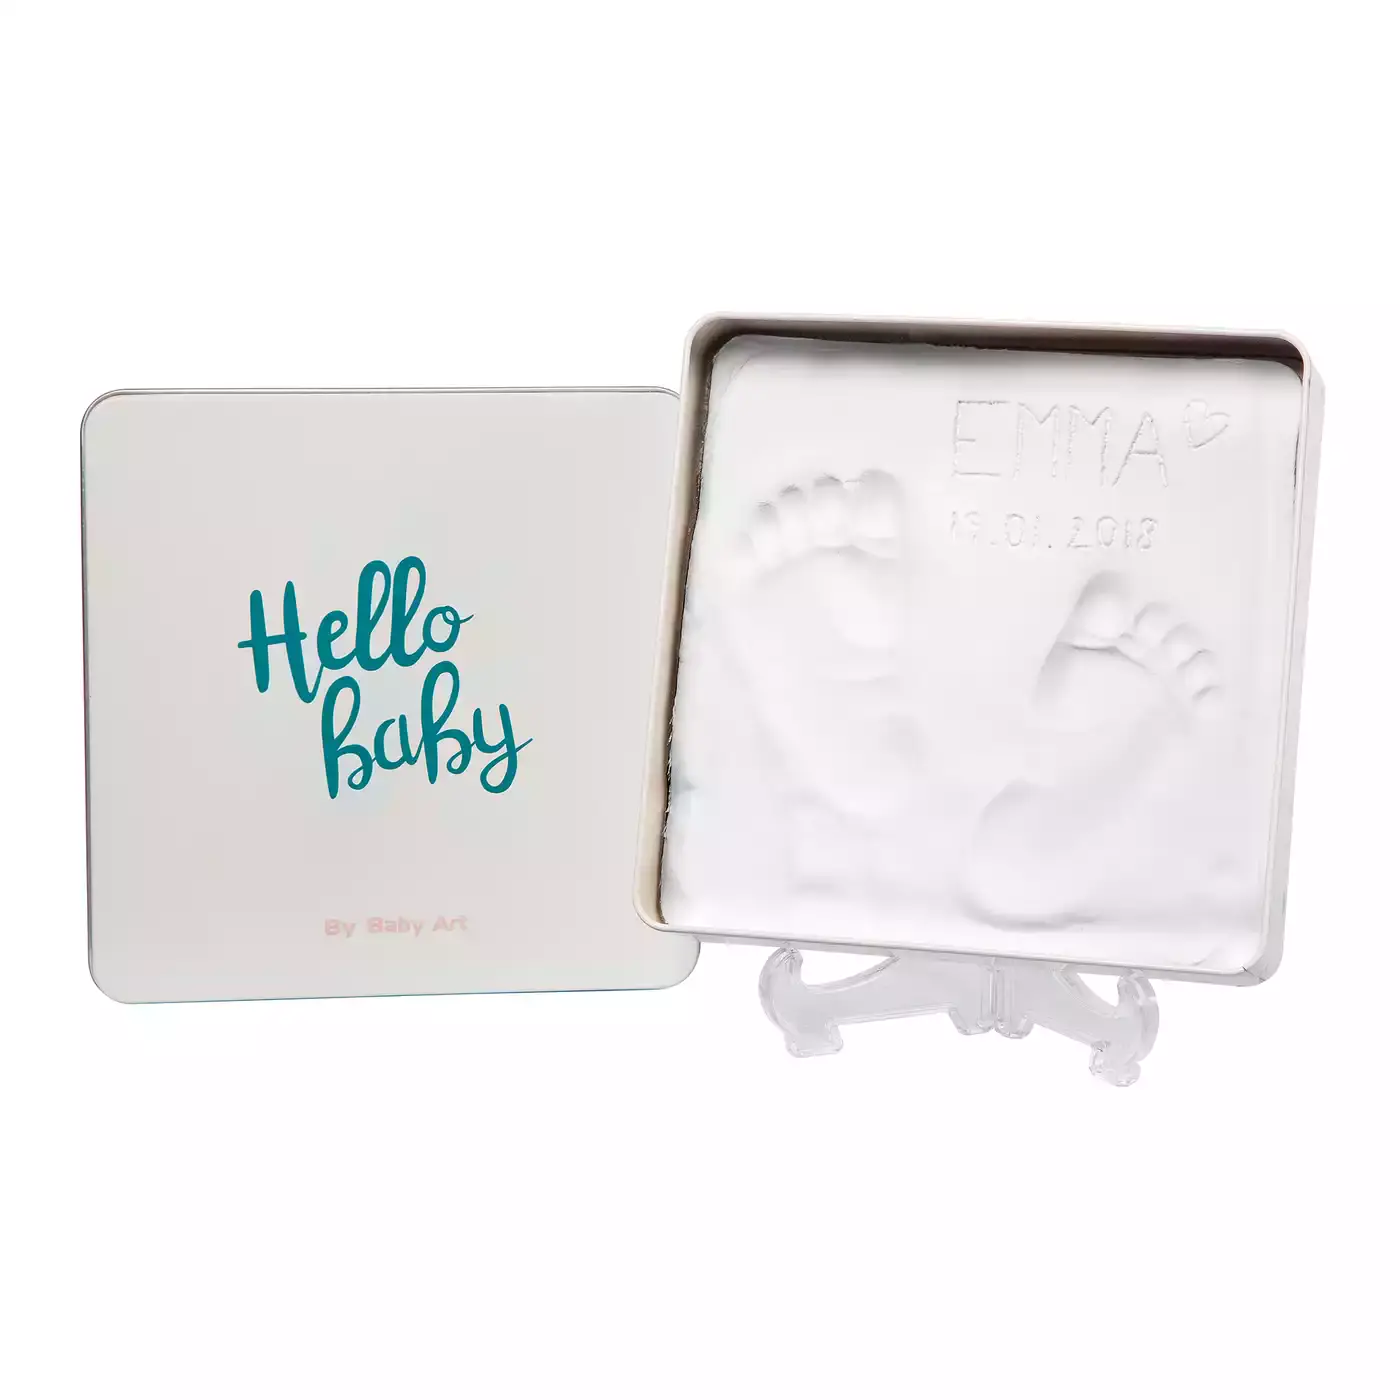 Magic Box - Hello Baby BabyArt 2000578722517 5